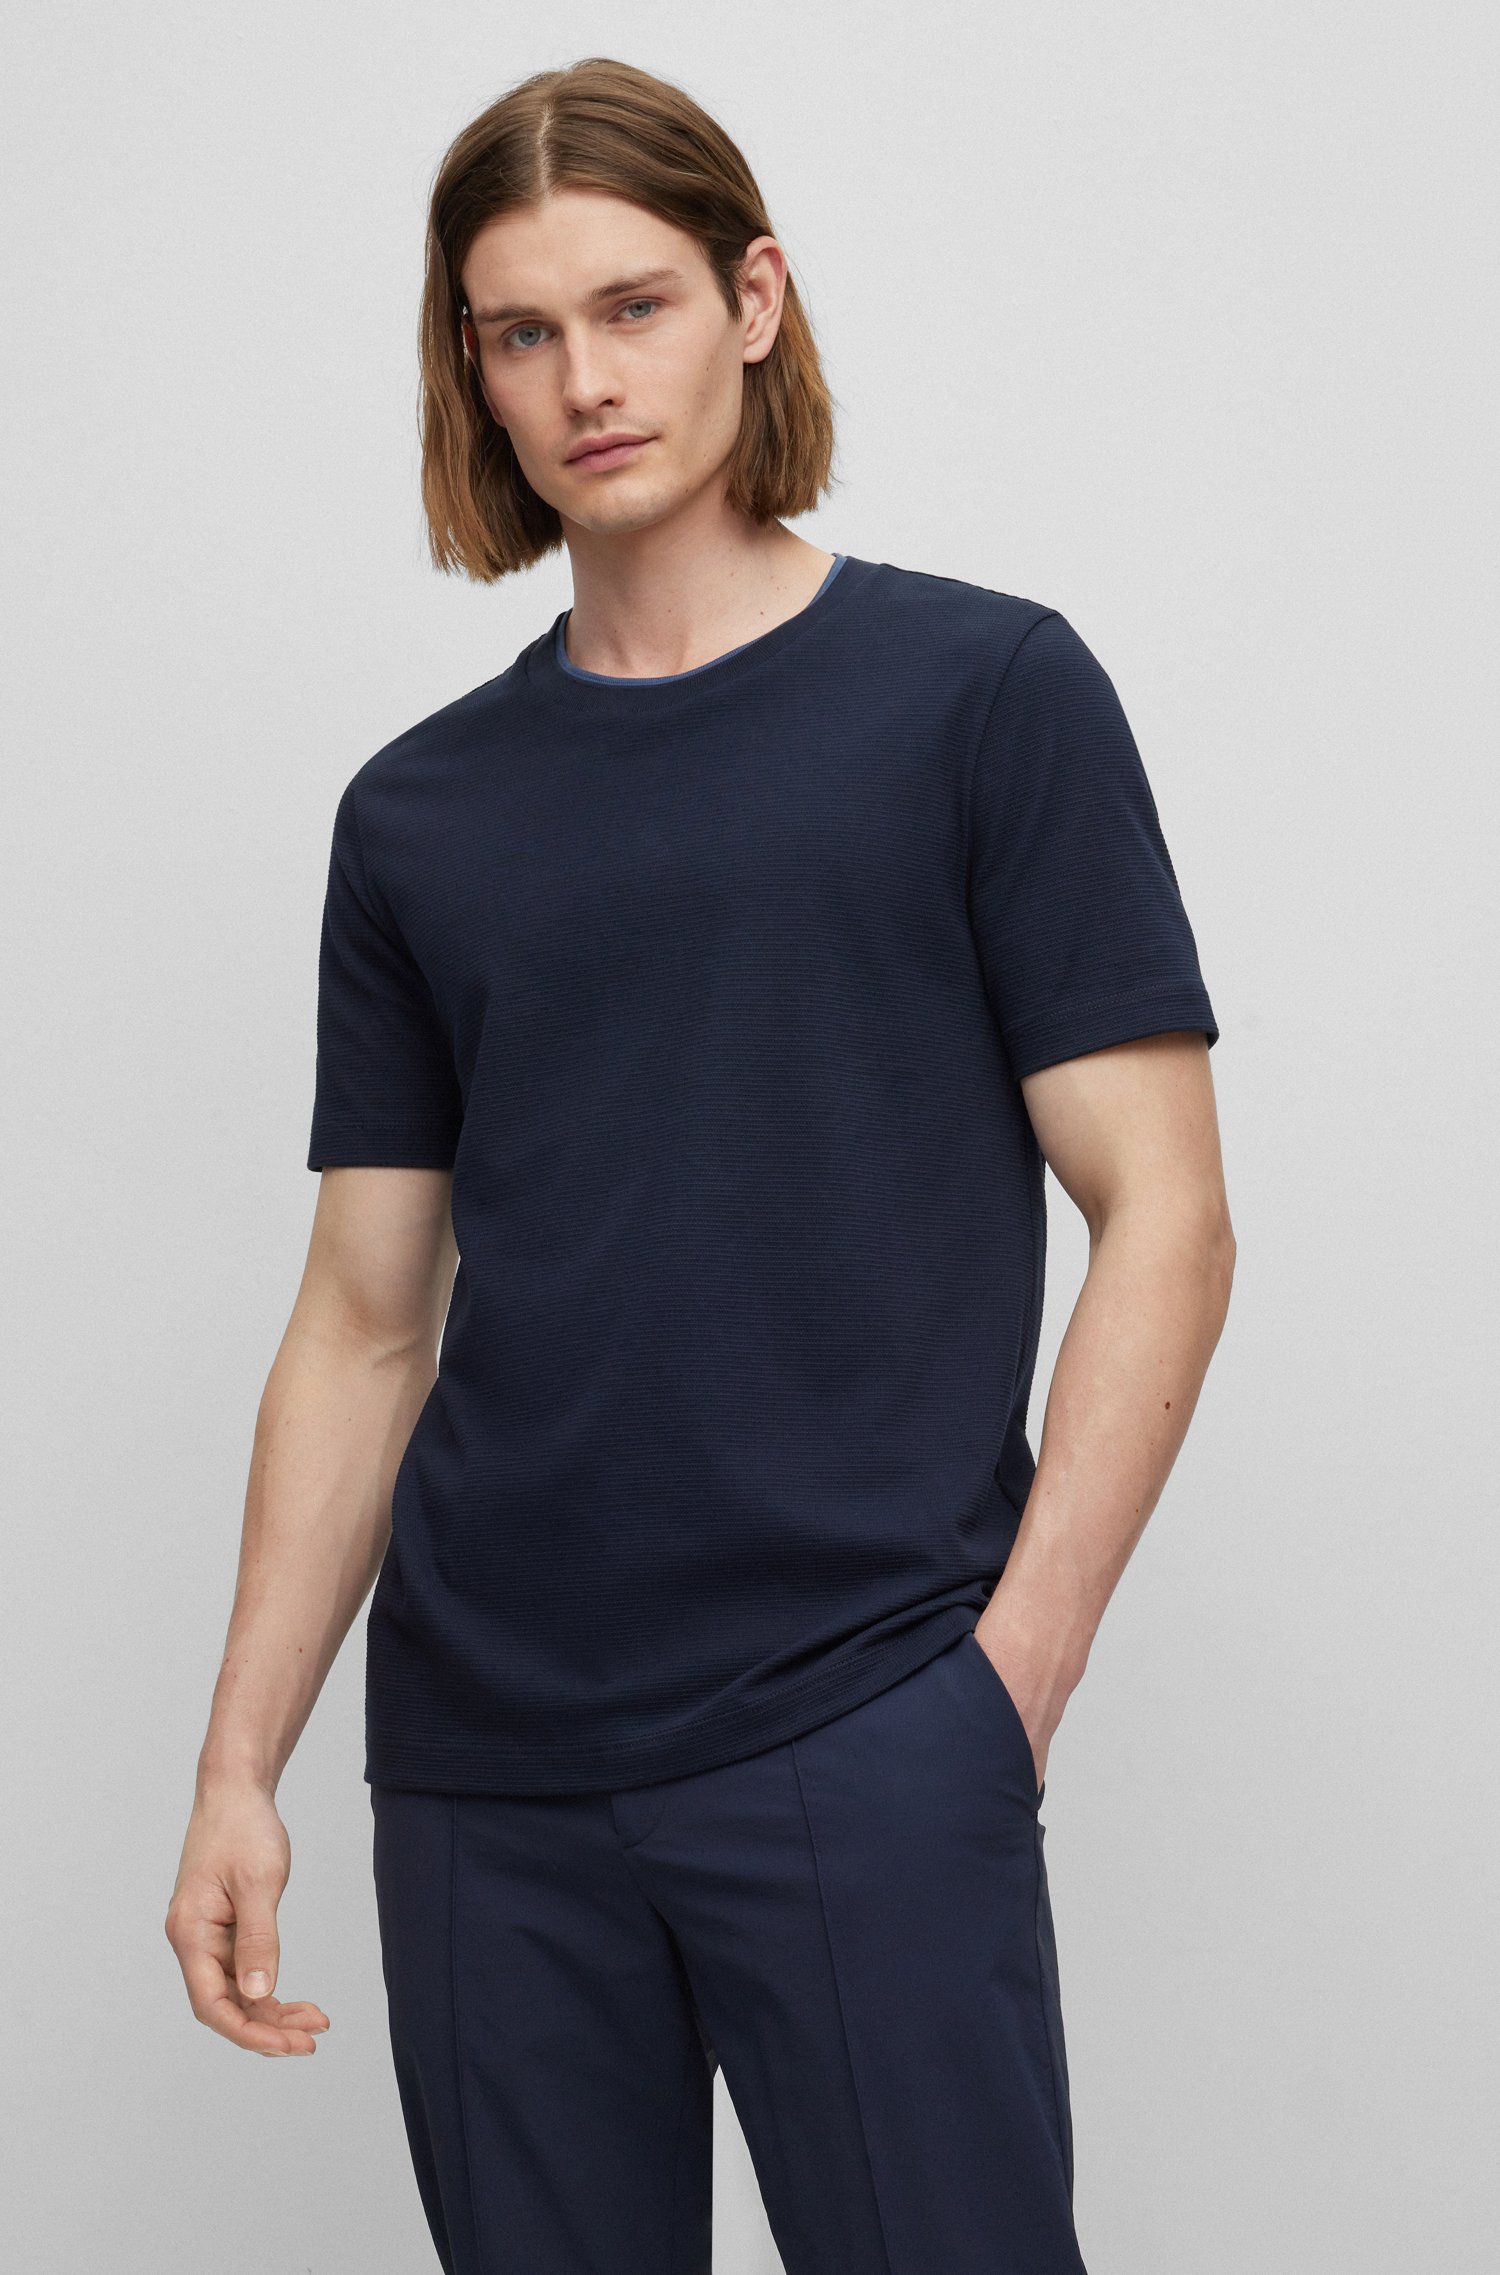 Camiseta slim fit de algodón estructurado con cuello doble